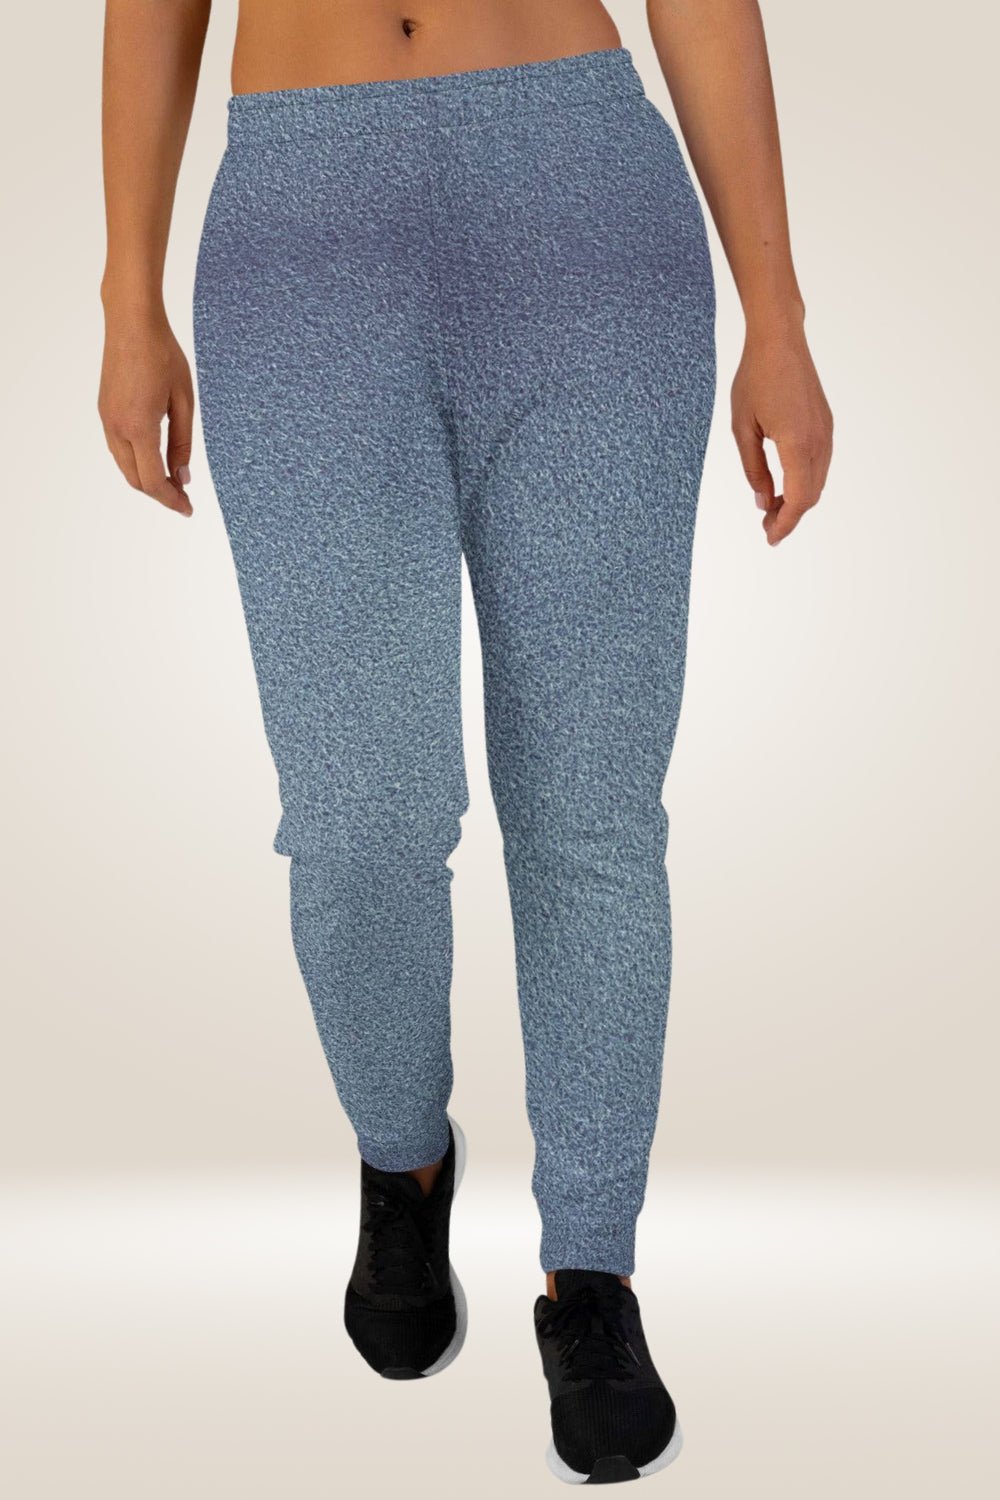 Blue Slim Fit sweatpants Joggers - TGC Boutique - Joggers